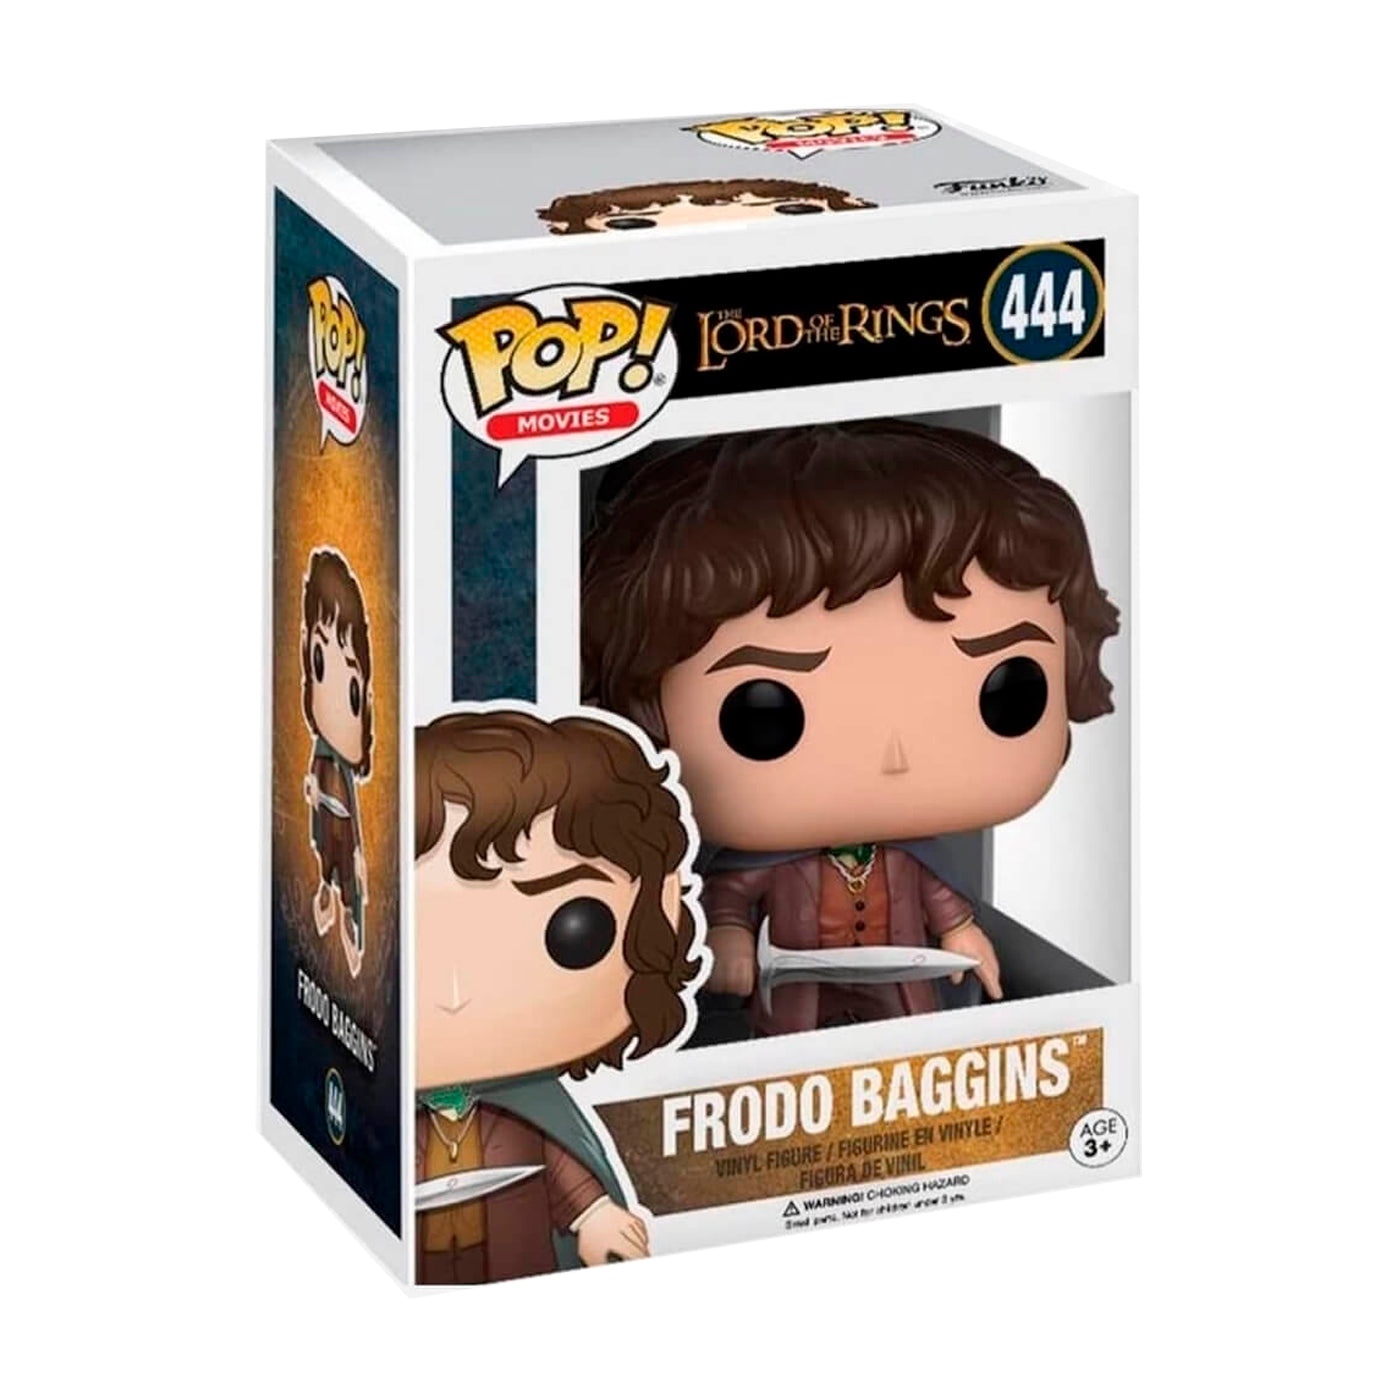 Funko Pop Movies: Frodo Baggins (444)